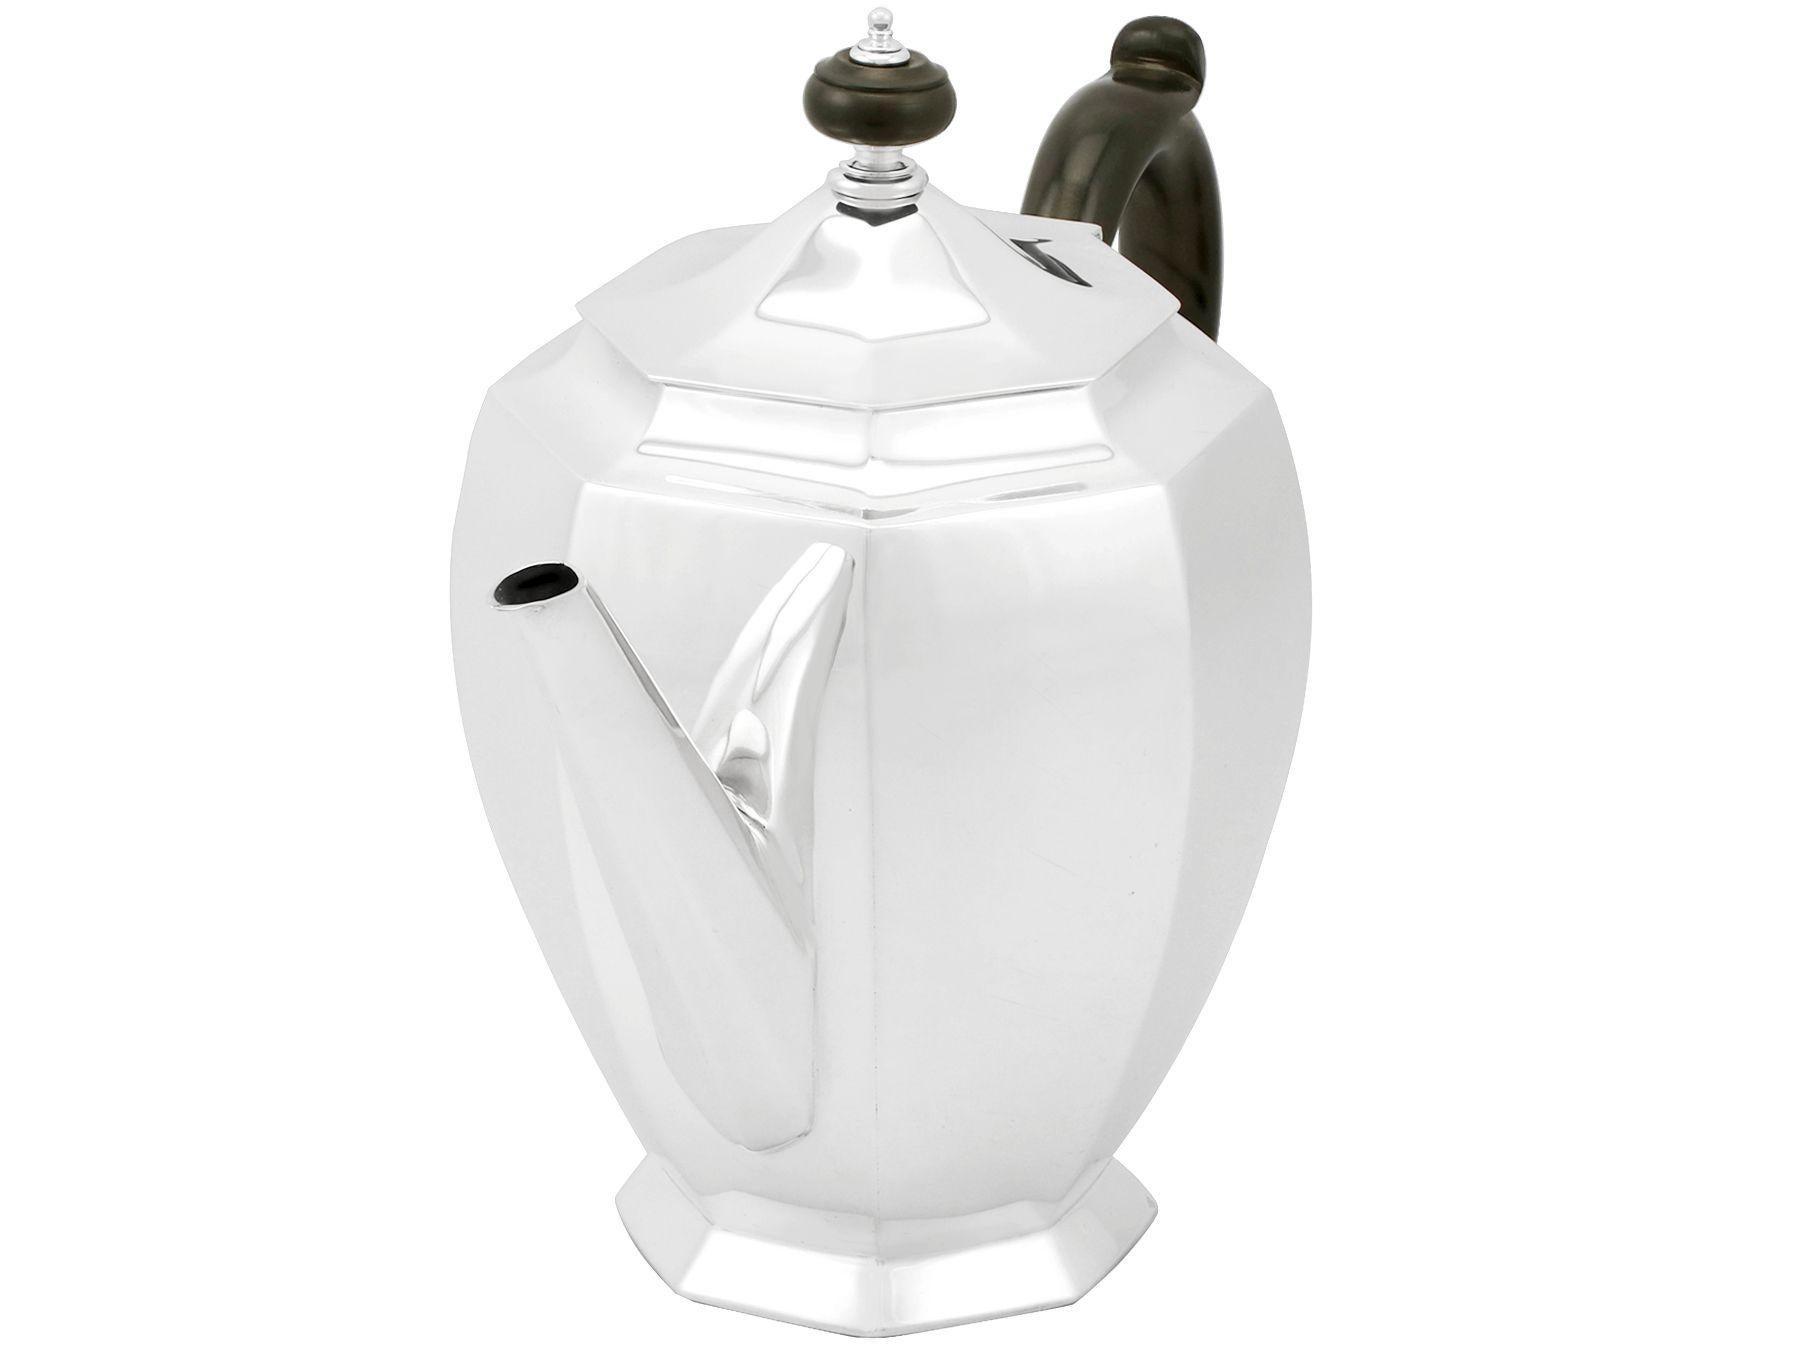 British Antique George v 1930s Sterling Silver Teapot by Roberts & Belk Ltd For Sale